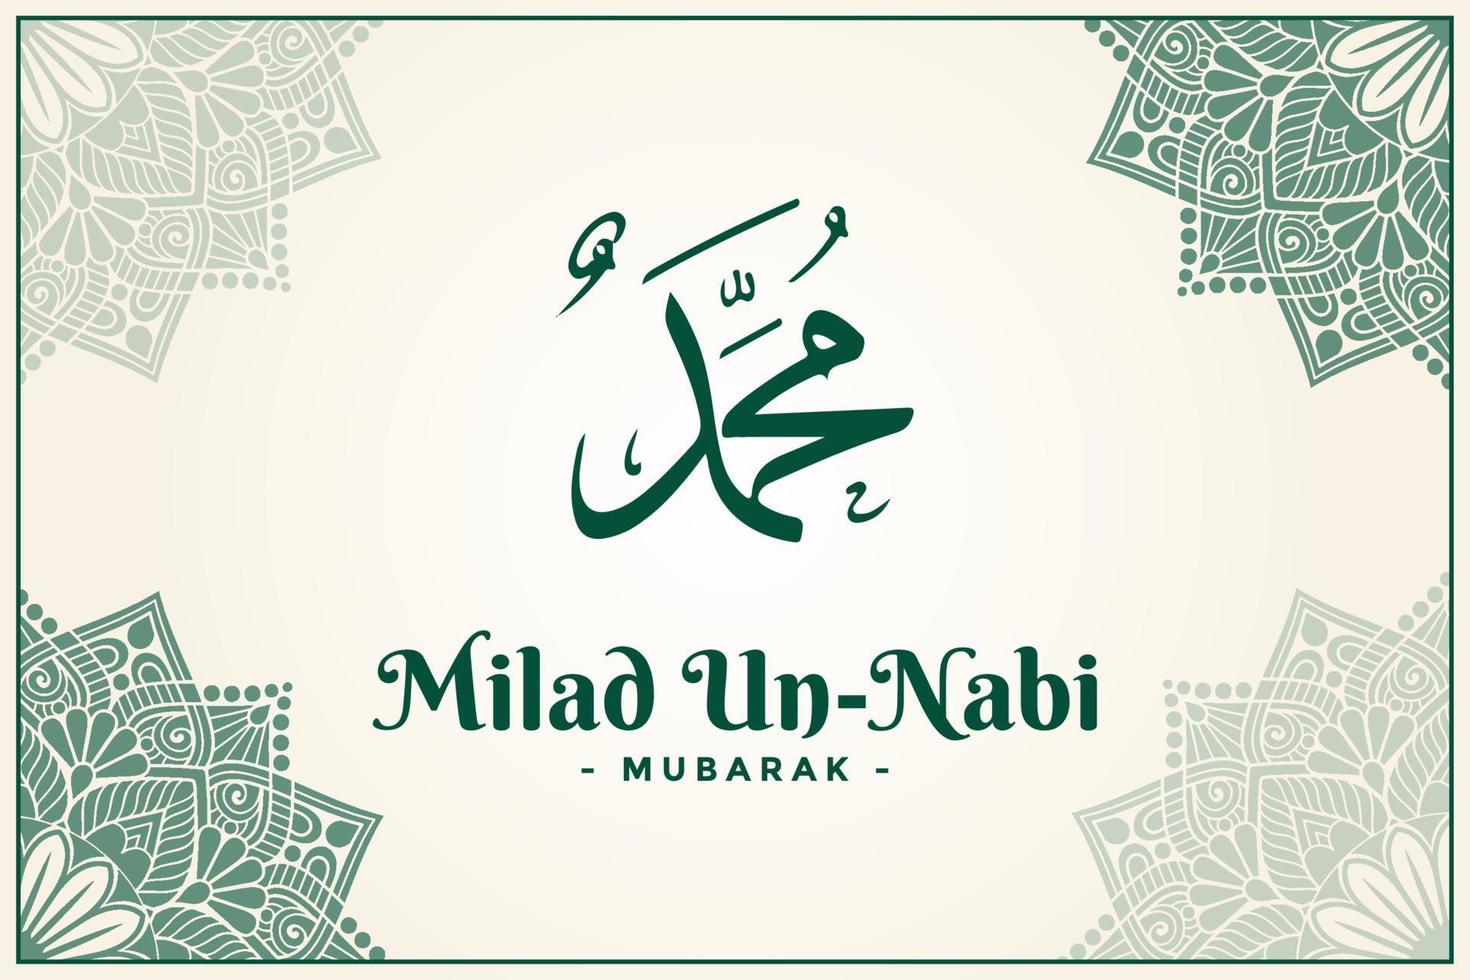 milad un nabi, verjaardag van de profeet Mohammed Saw vector